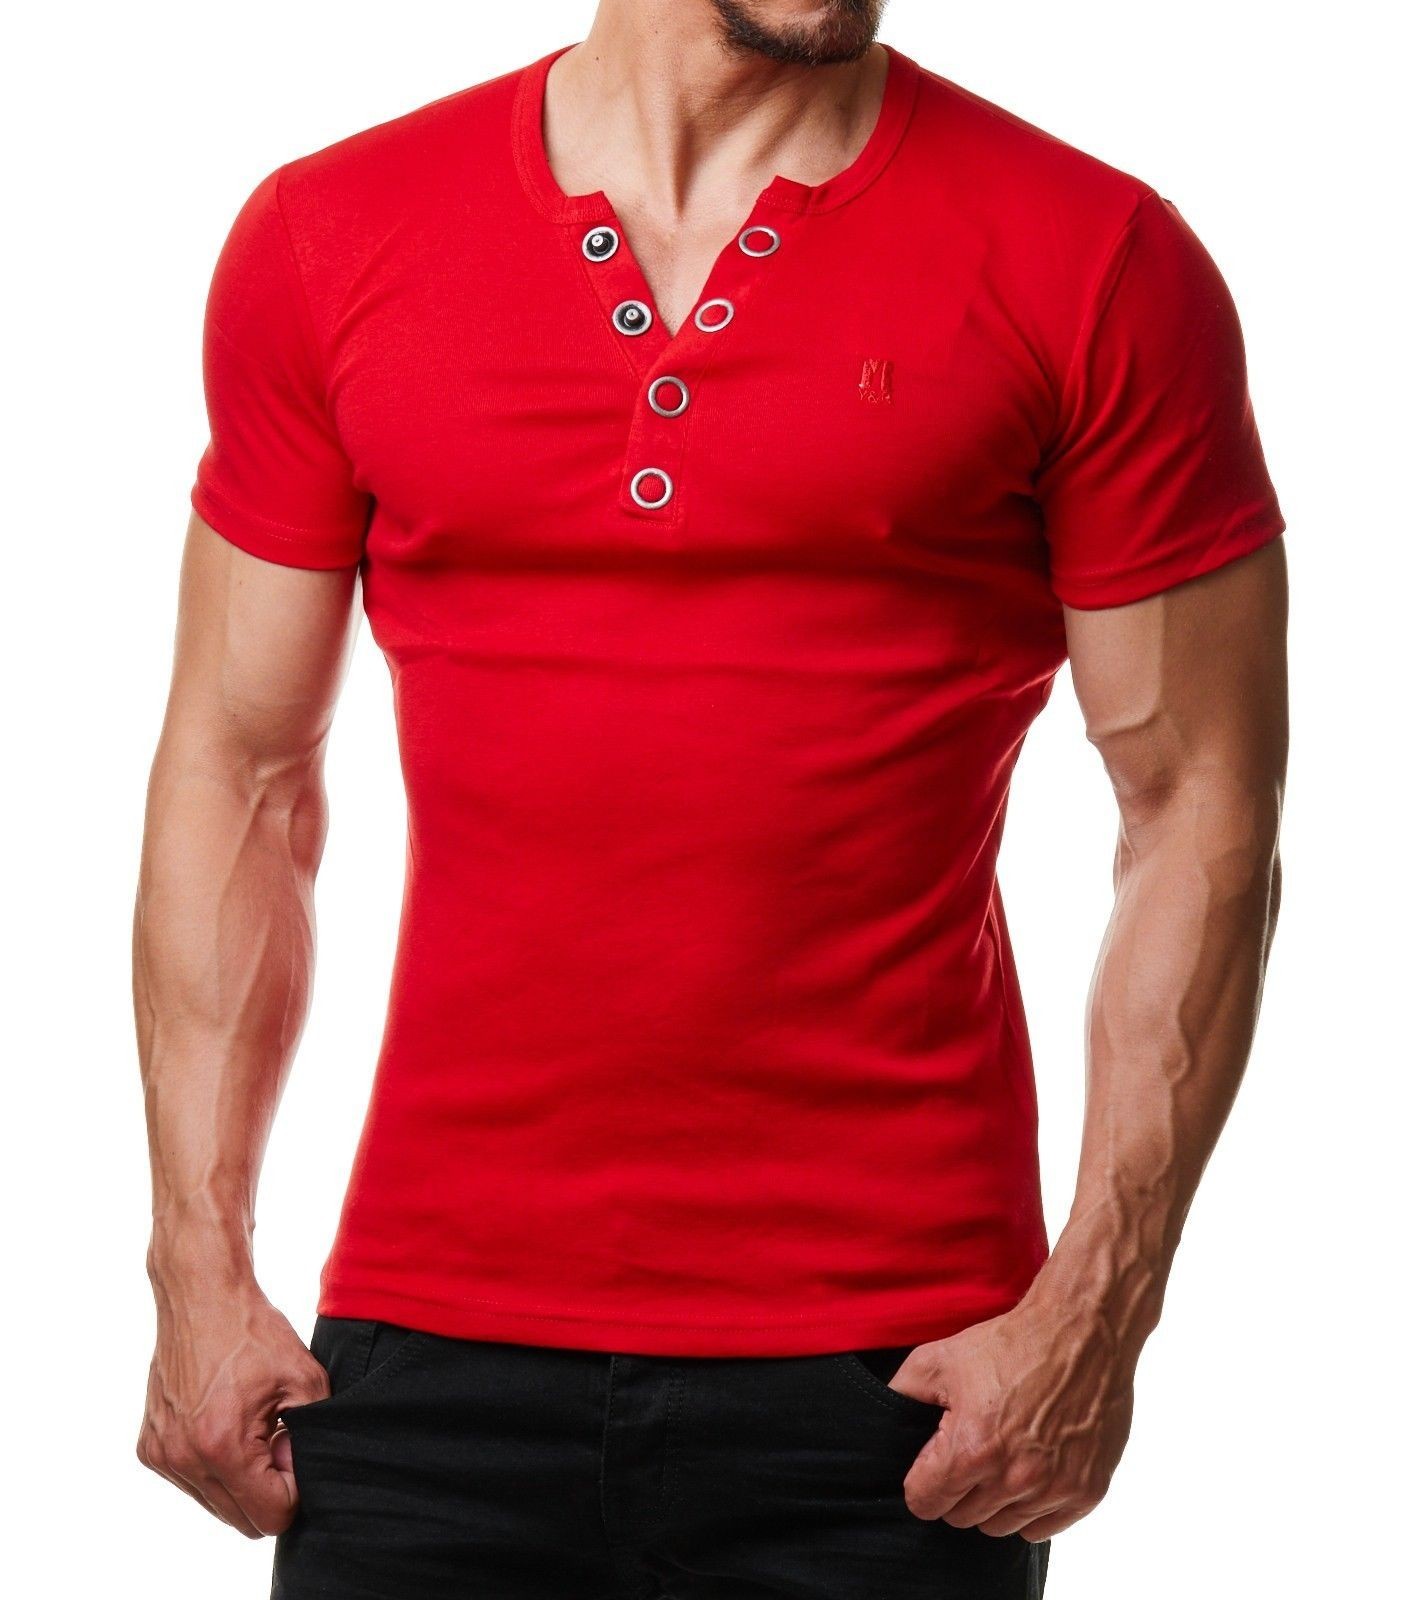 Free photo: T-shirt homme rouge - Clothing, Fashion, Man - Free ...